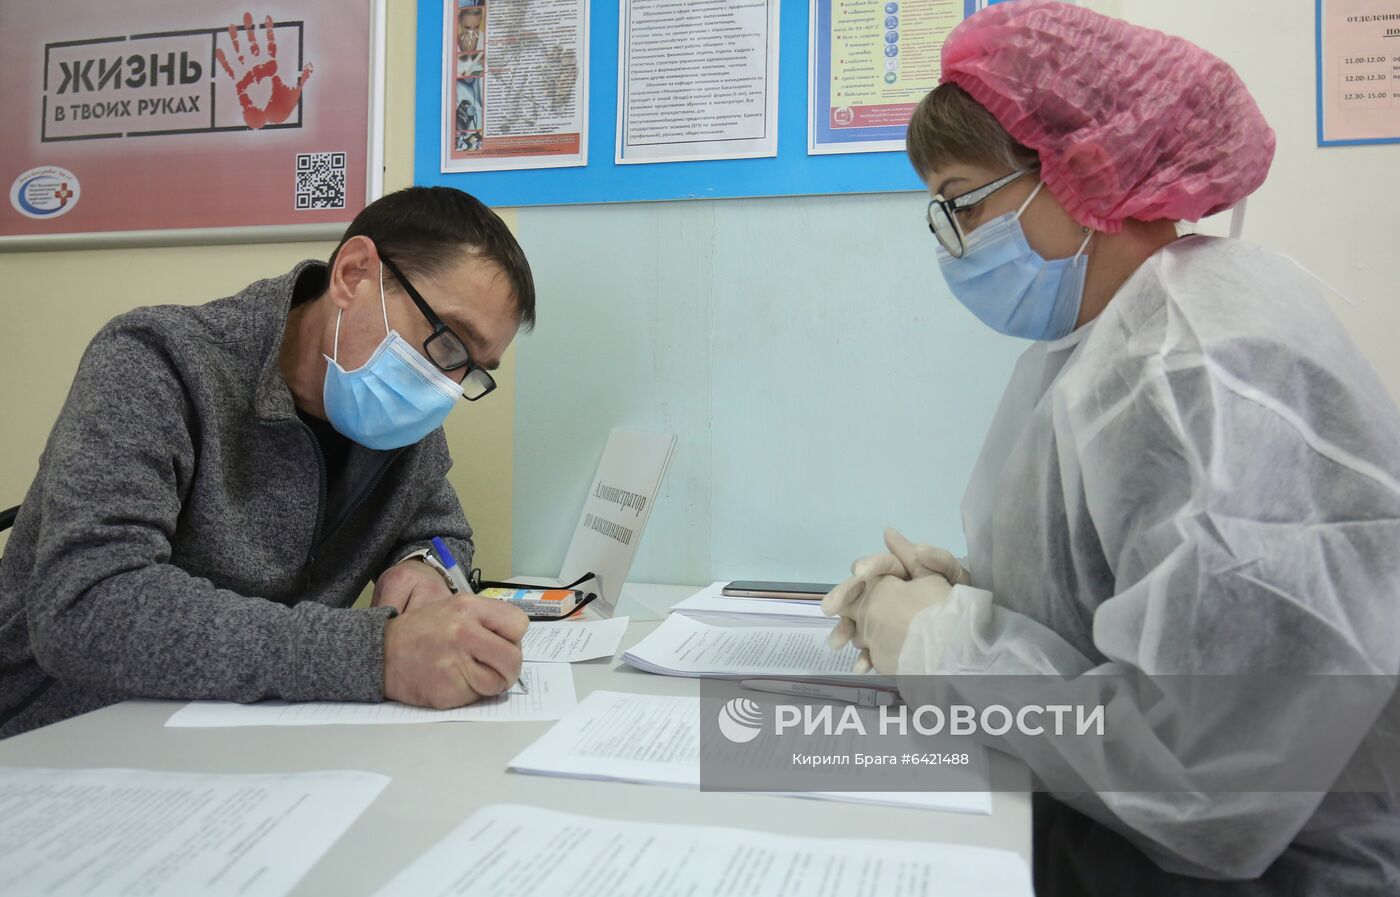 Вакцинация от коронавируса в Волгограде